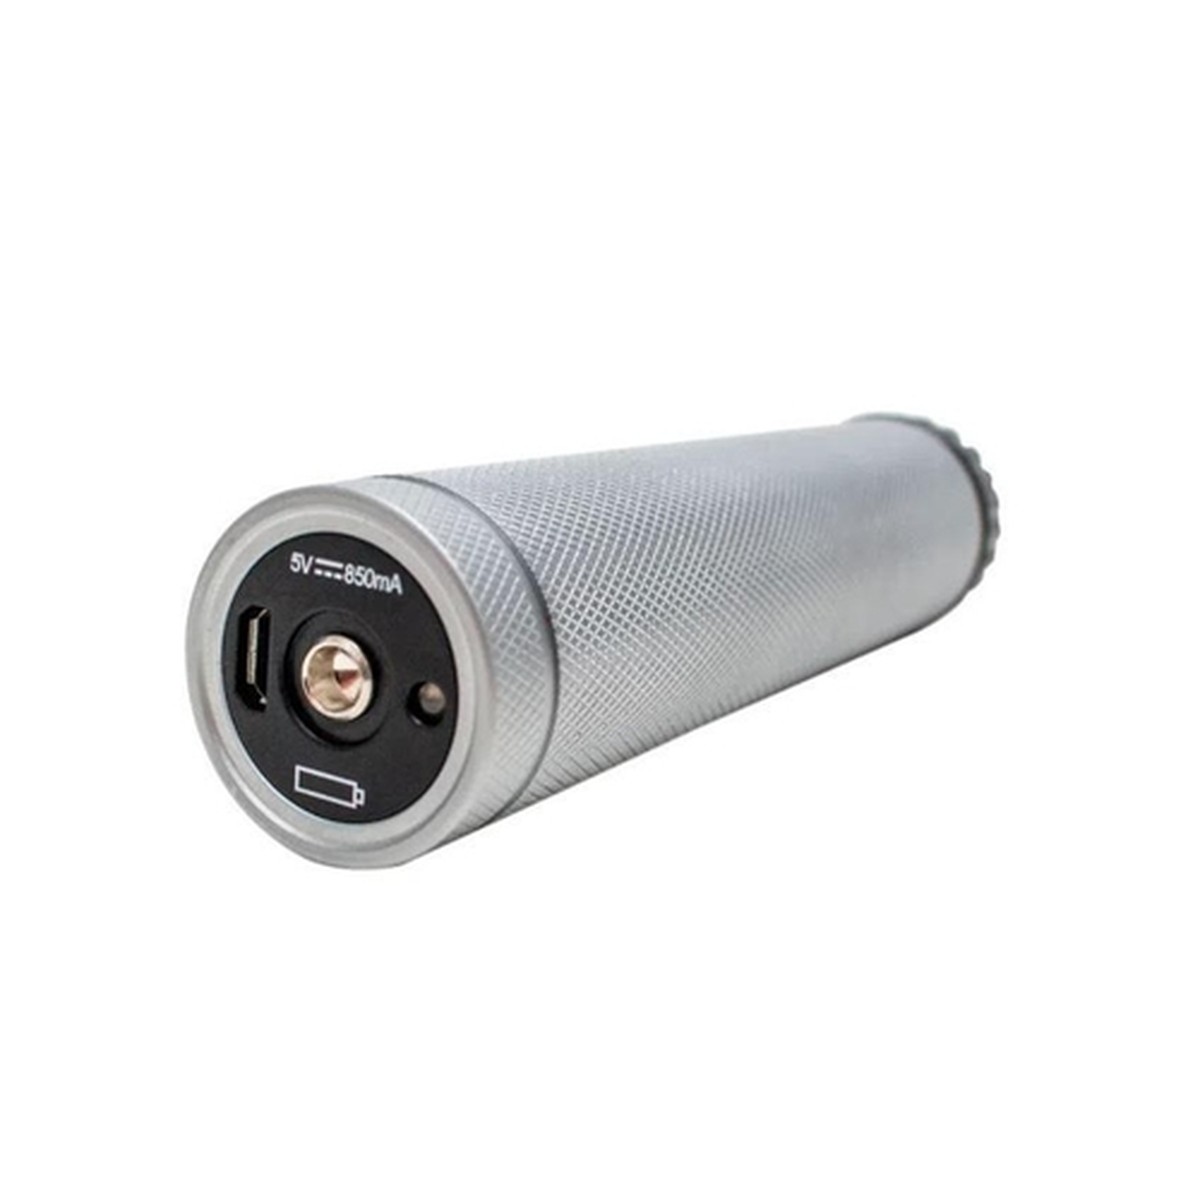 Foto do produto Cabo Recarregável 3.5V em Metal com Bateria de Lítio e Carregador USB MD 